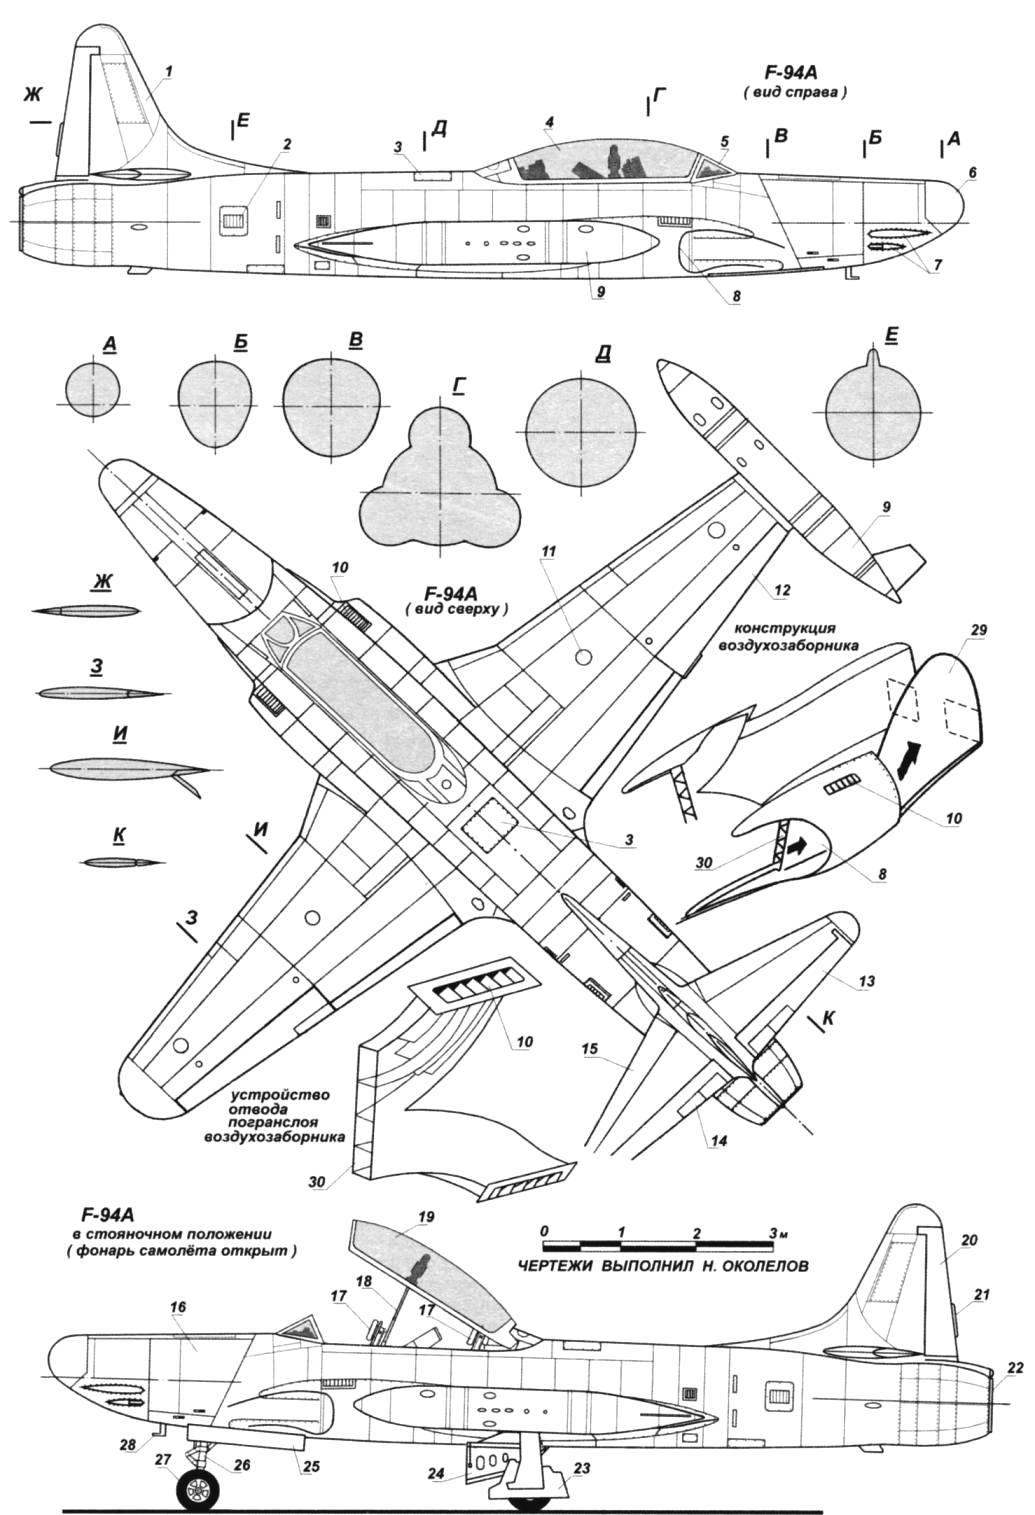 FIGHTER-INTERCEPTOR F-94 STARFIRE | MODEL CONSTRUCTION